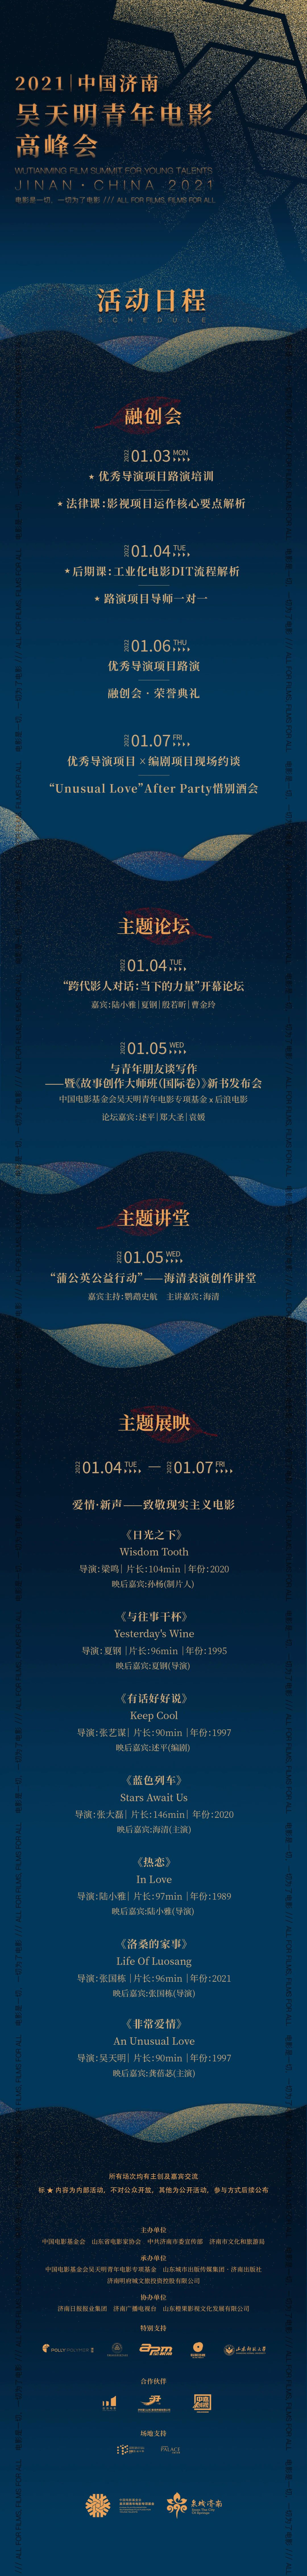 虽迟但到，2021中国济南吴天明青年电影高峰会来了